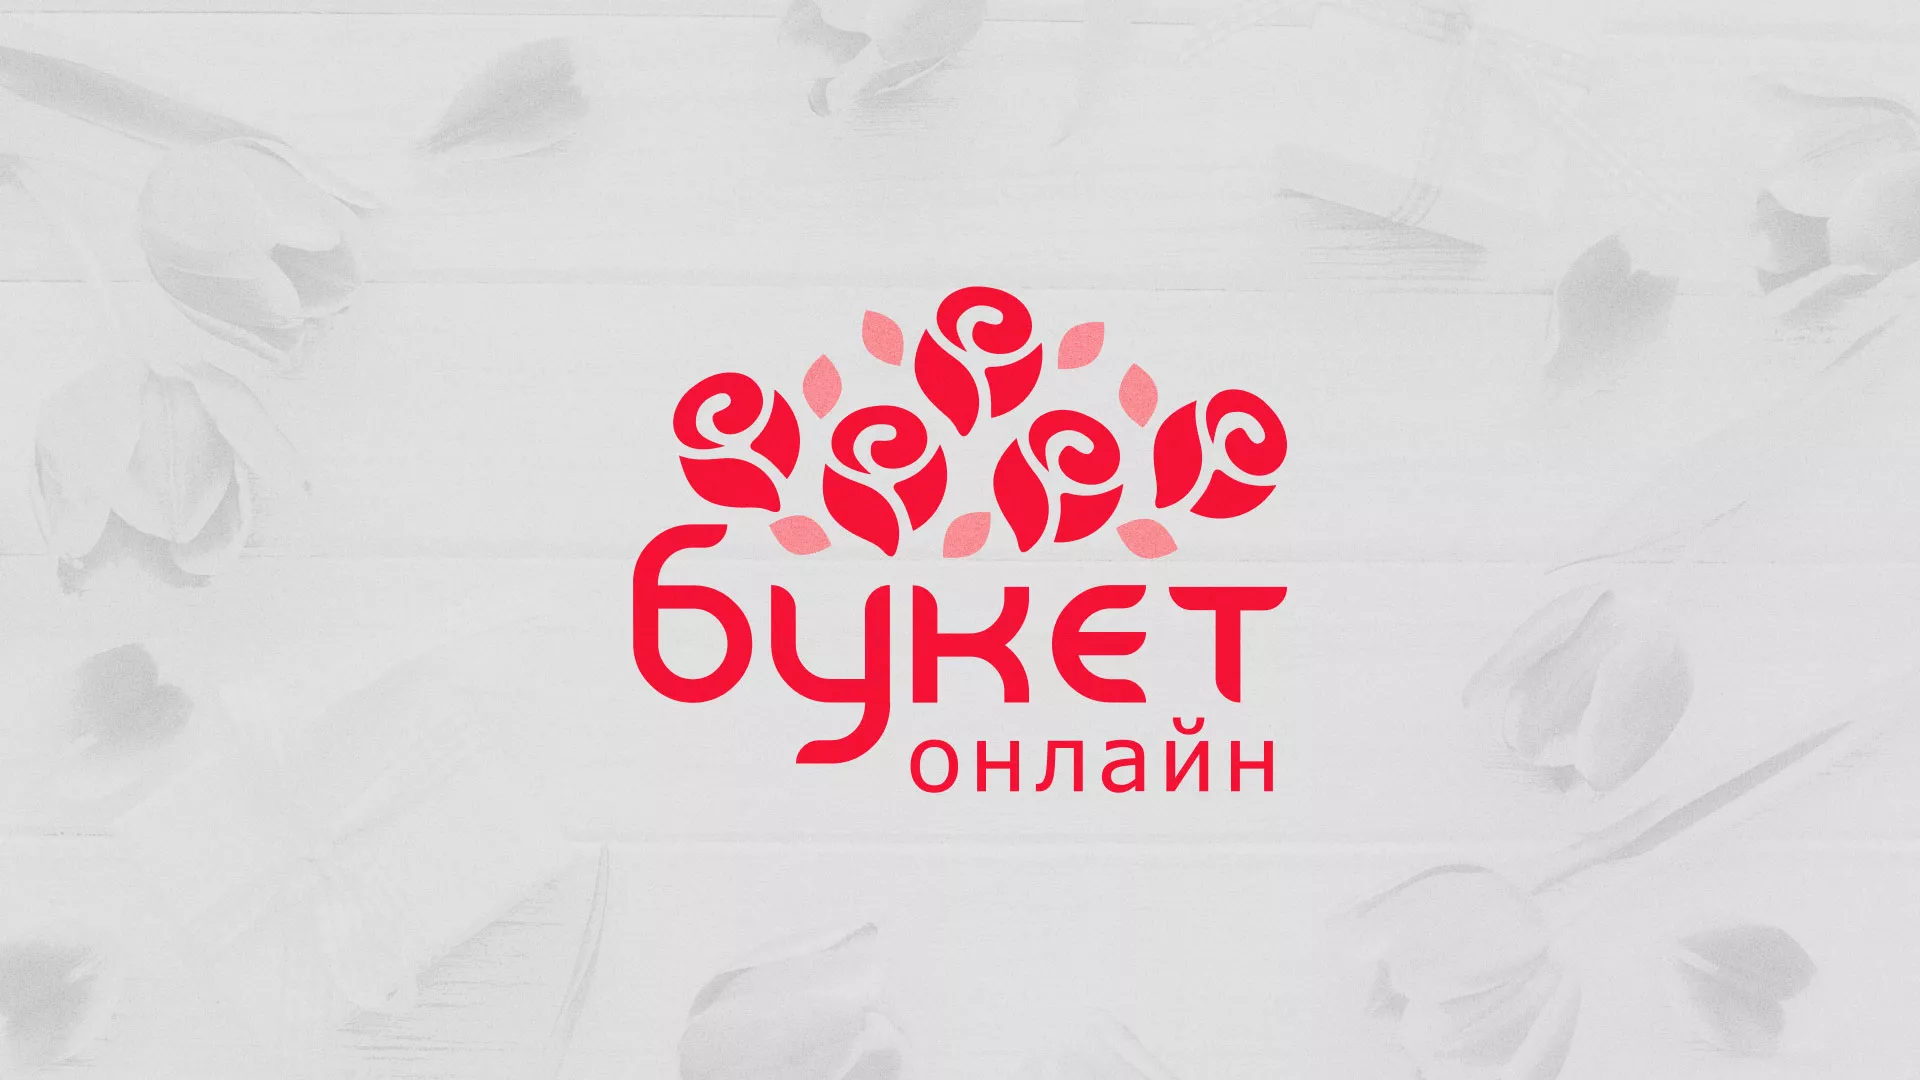 Создание интернет-магазина «Букет-онлайн» по цветам в Климовске